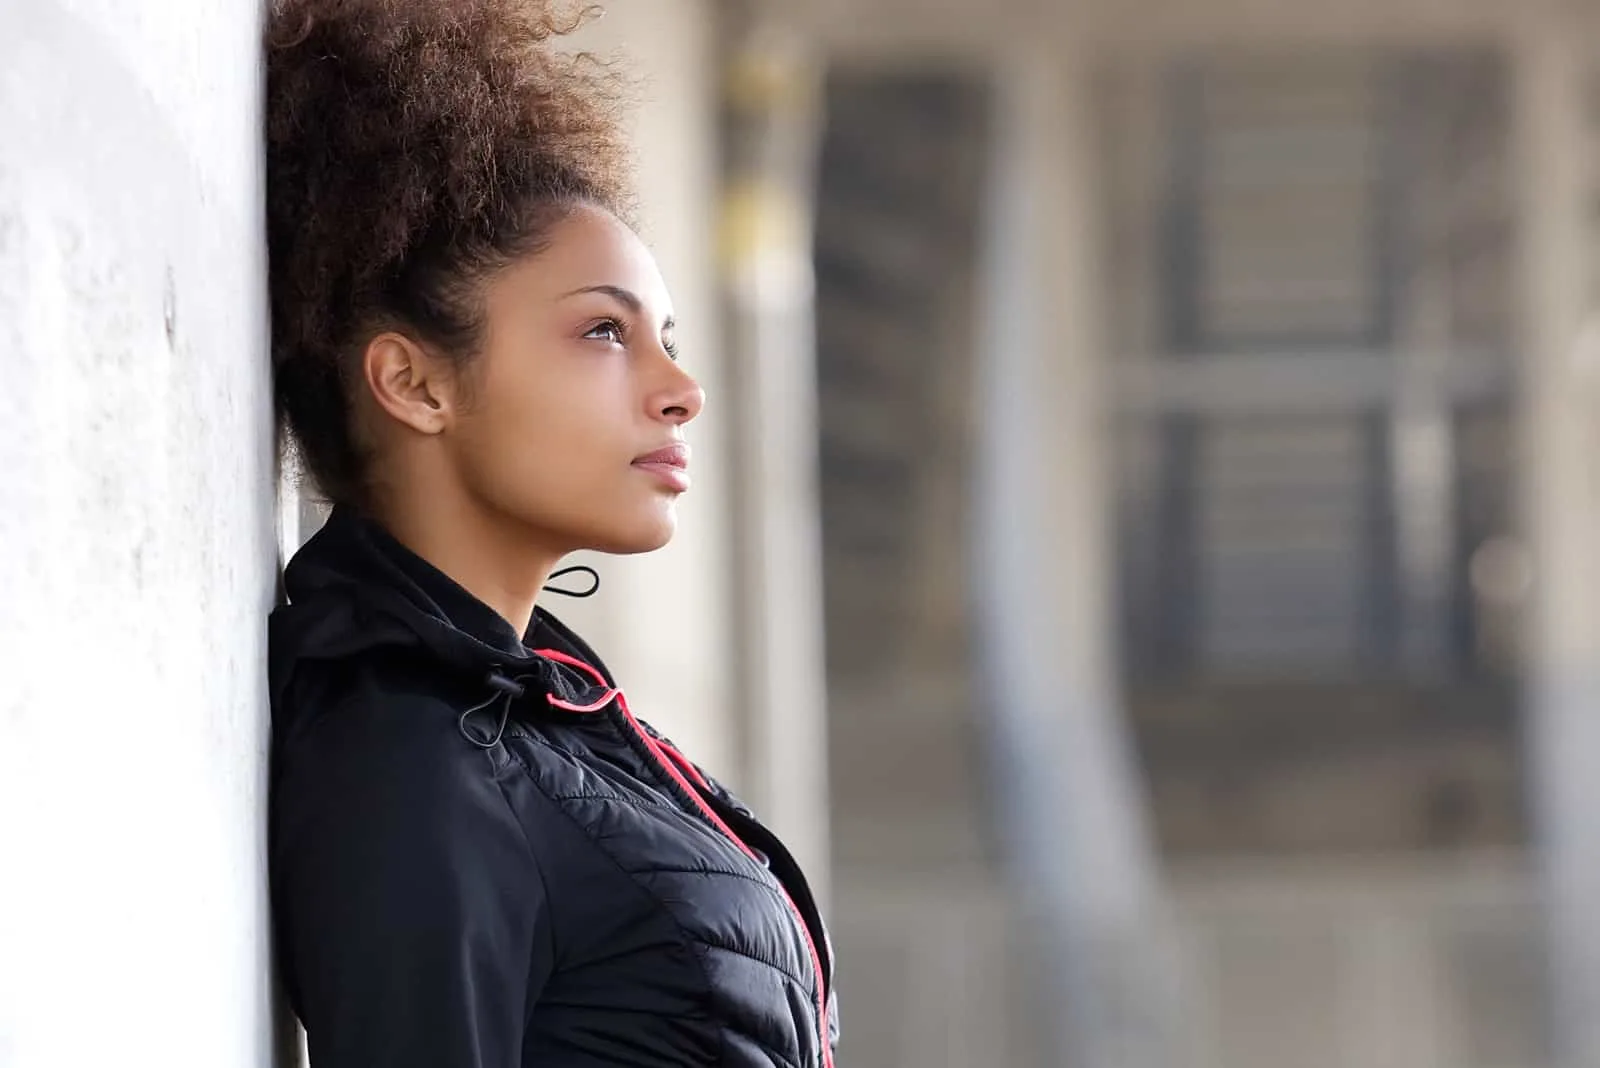 Eine junge attraktive schwarze Frau lehnt an einer Betonwand und denkt nach